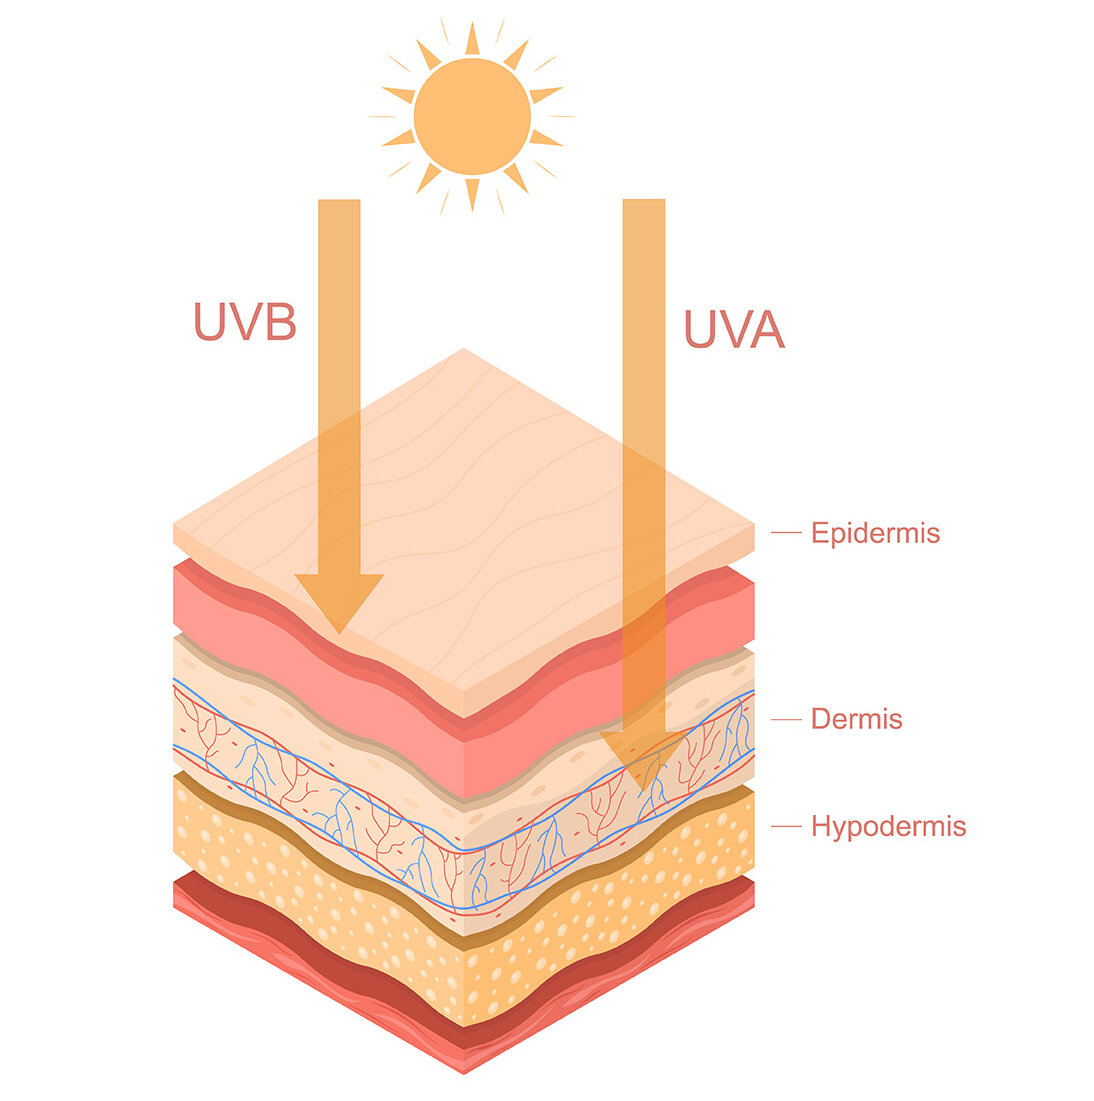 Grafik eines Querschnitts durch die Haut. Die Haut hat verschiedene Schichten, beschriftet sind Epidermis, Lederhaut und Unterhautfettgewebe. UV-B-Strahlung dringt nur bis in die Epidermis, dargestellt durch einen Pfeil. Der Pfeil für die UV-A-Strahlung hingegen reicht bis in die Lederhaut.